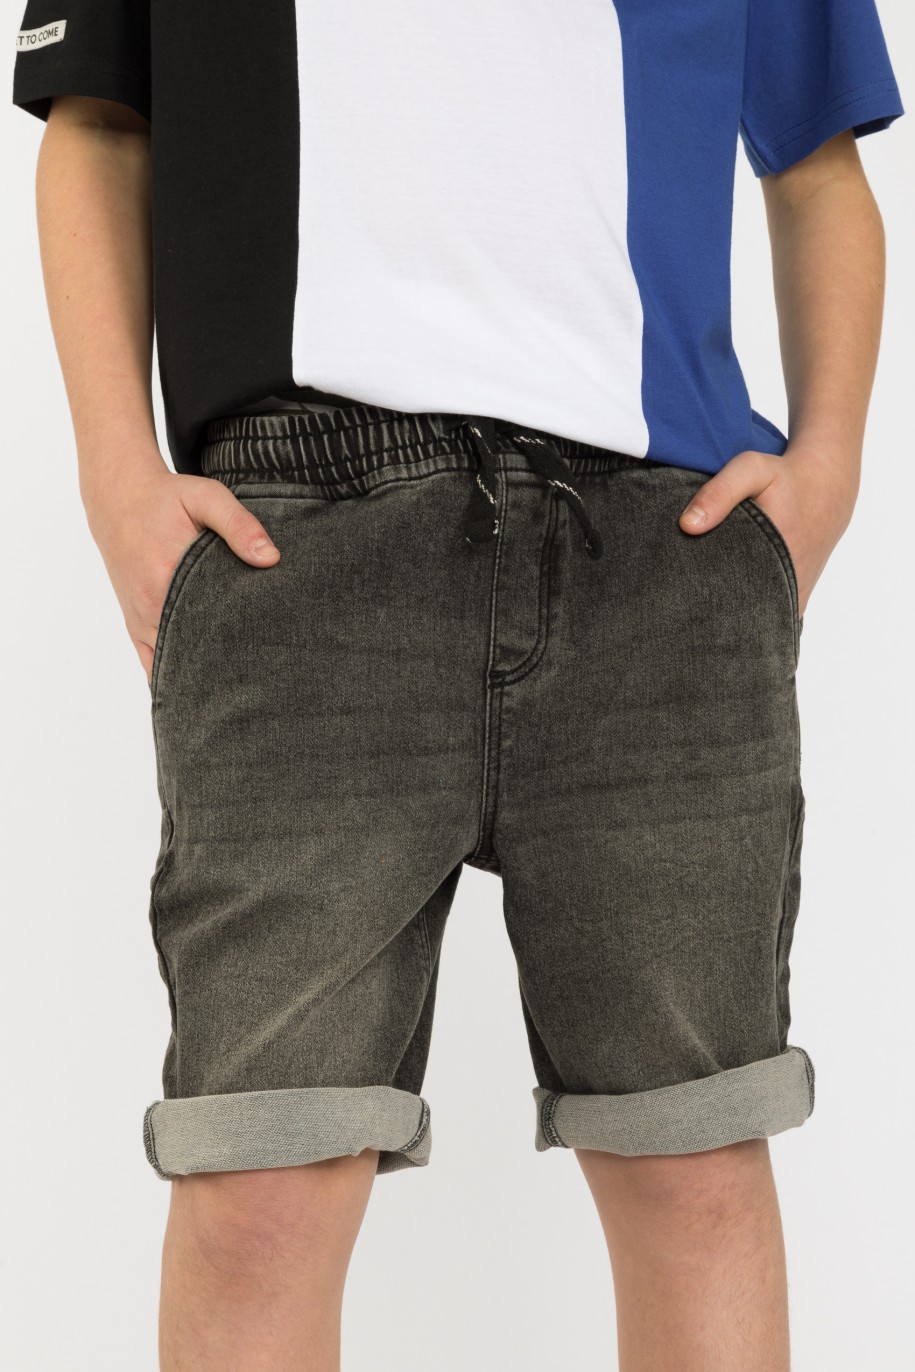 Krótkie szare jeansowe spodenki dla chłopaka - 41199